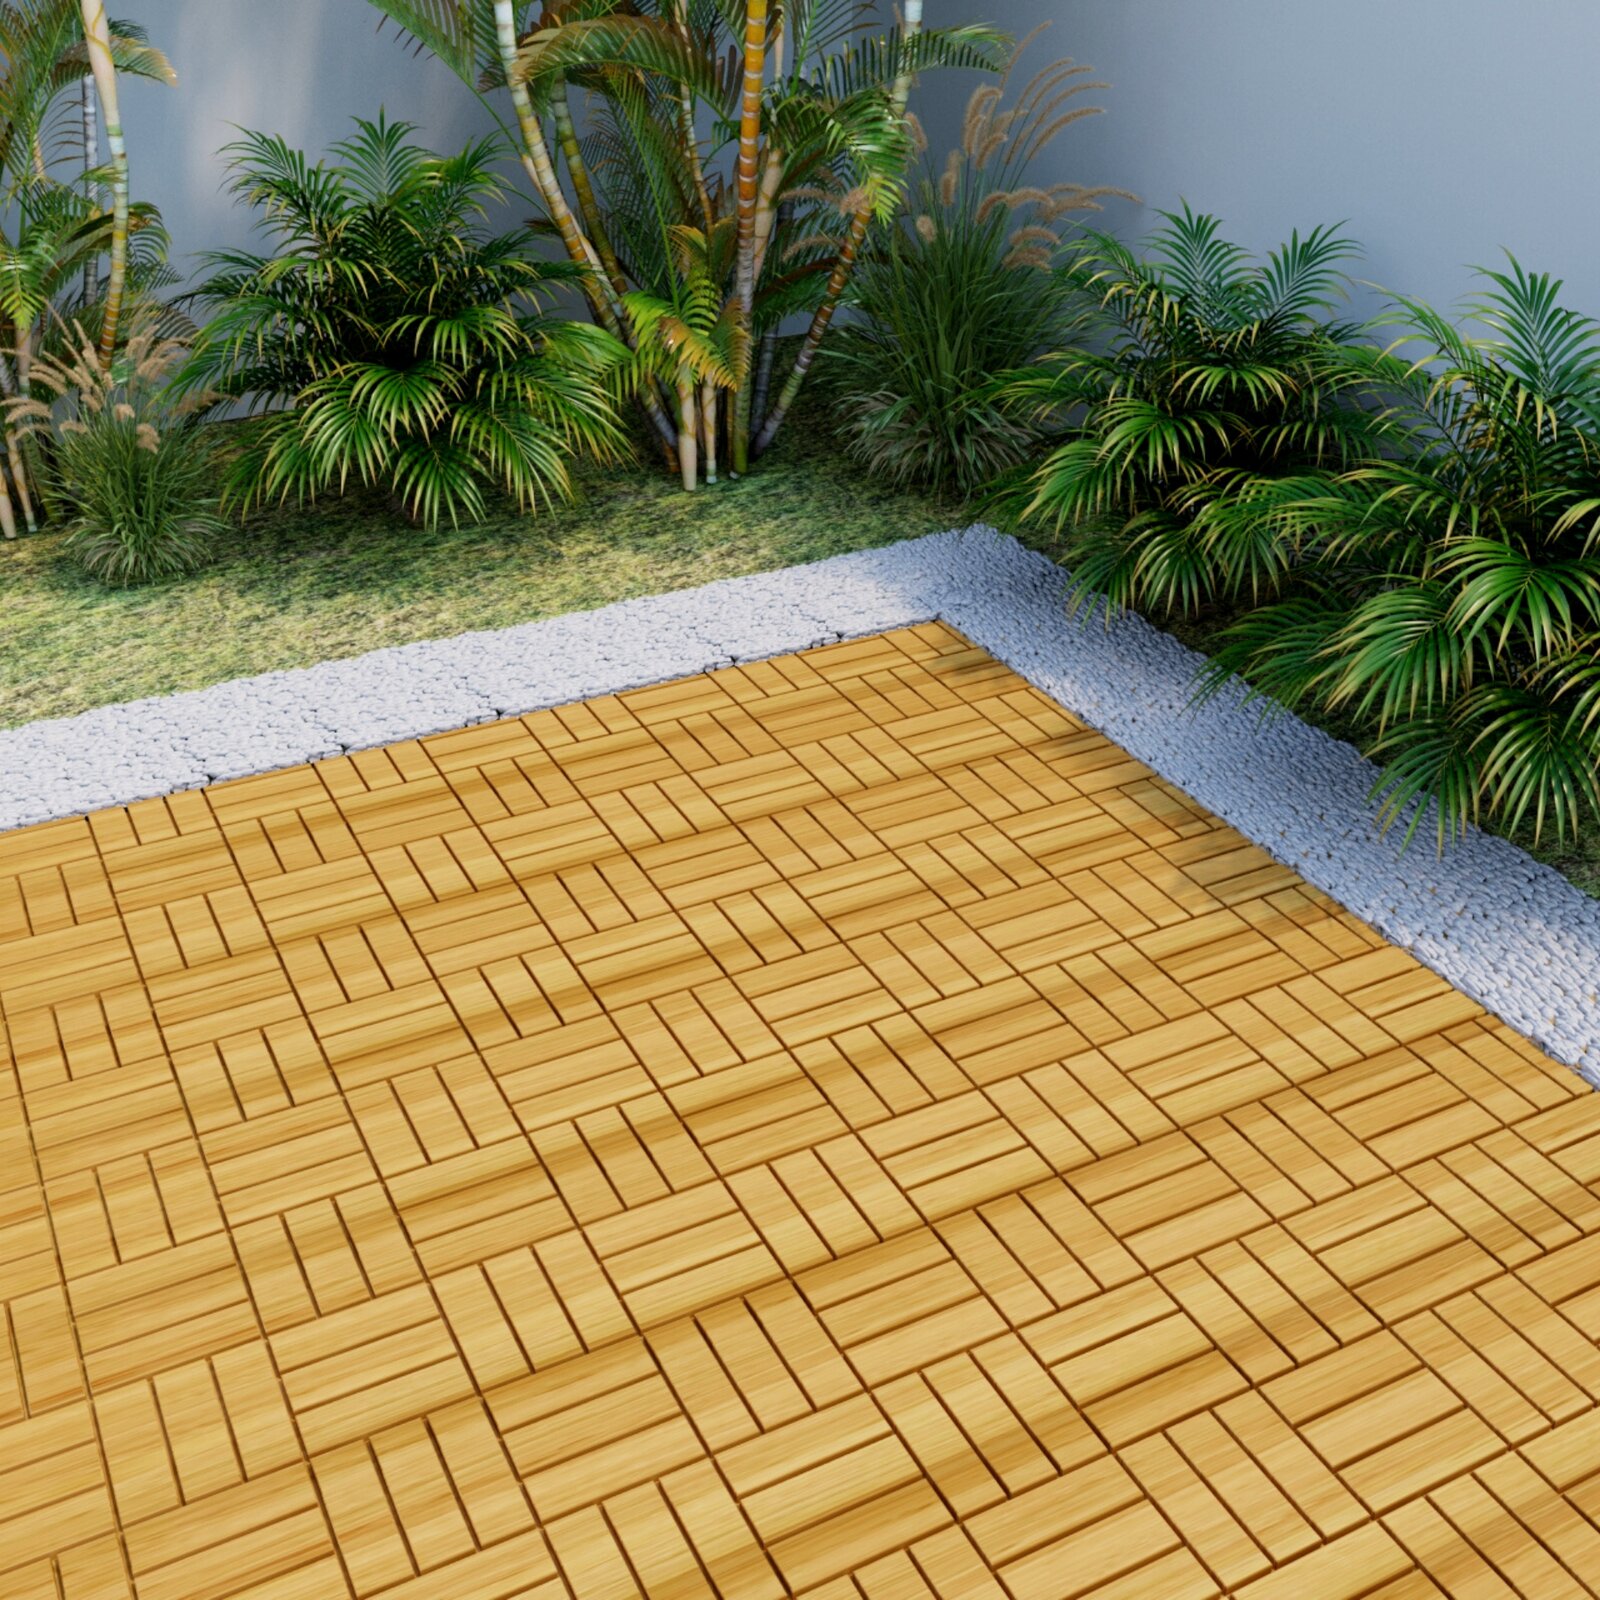 DORROM 12" X 12" Square Teak Wood Interlocking Flooring Tiles Checker Pattern Pack Of 10 Tiles